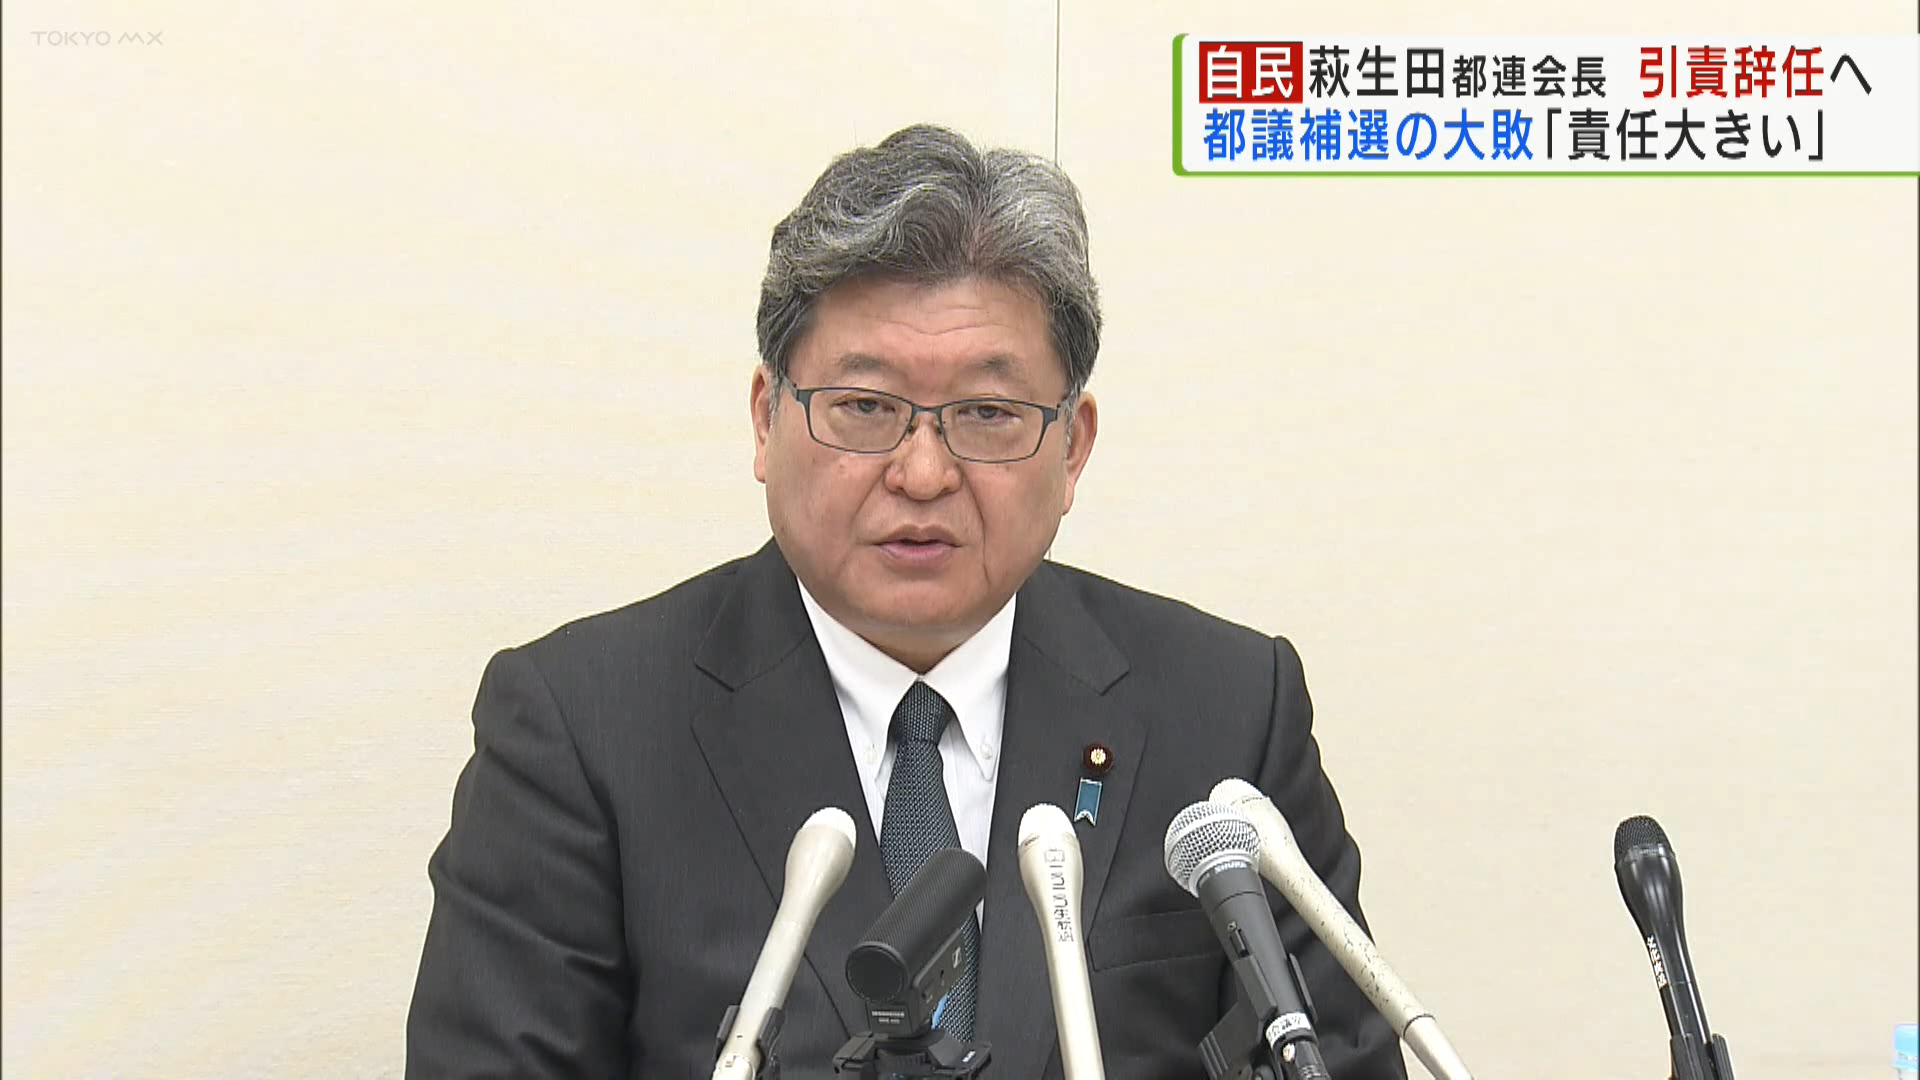 自民党の萩生田光一都連会長が、都連会長を辞任する意向を示しました。今月行われた都議補選で自民党が大敗した責任を取った形で、「指揮を執った私の責任は大きかった」と辞任の理由を説明しています。